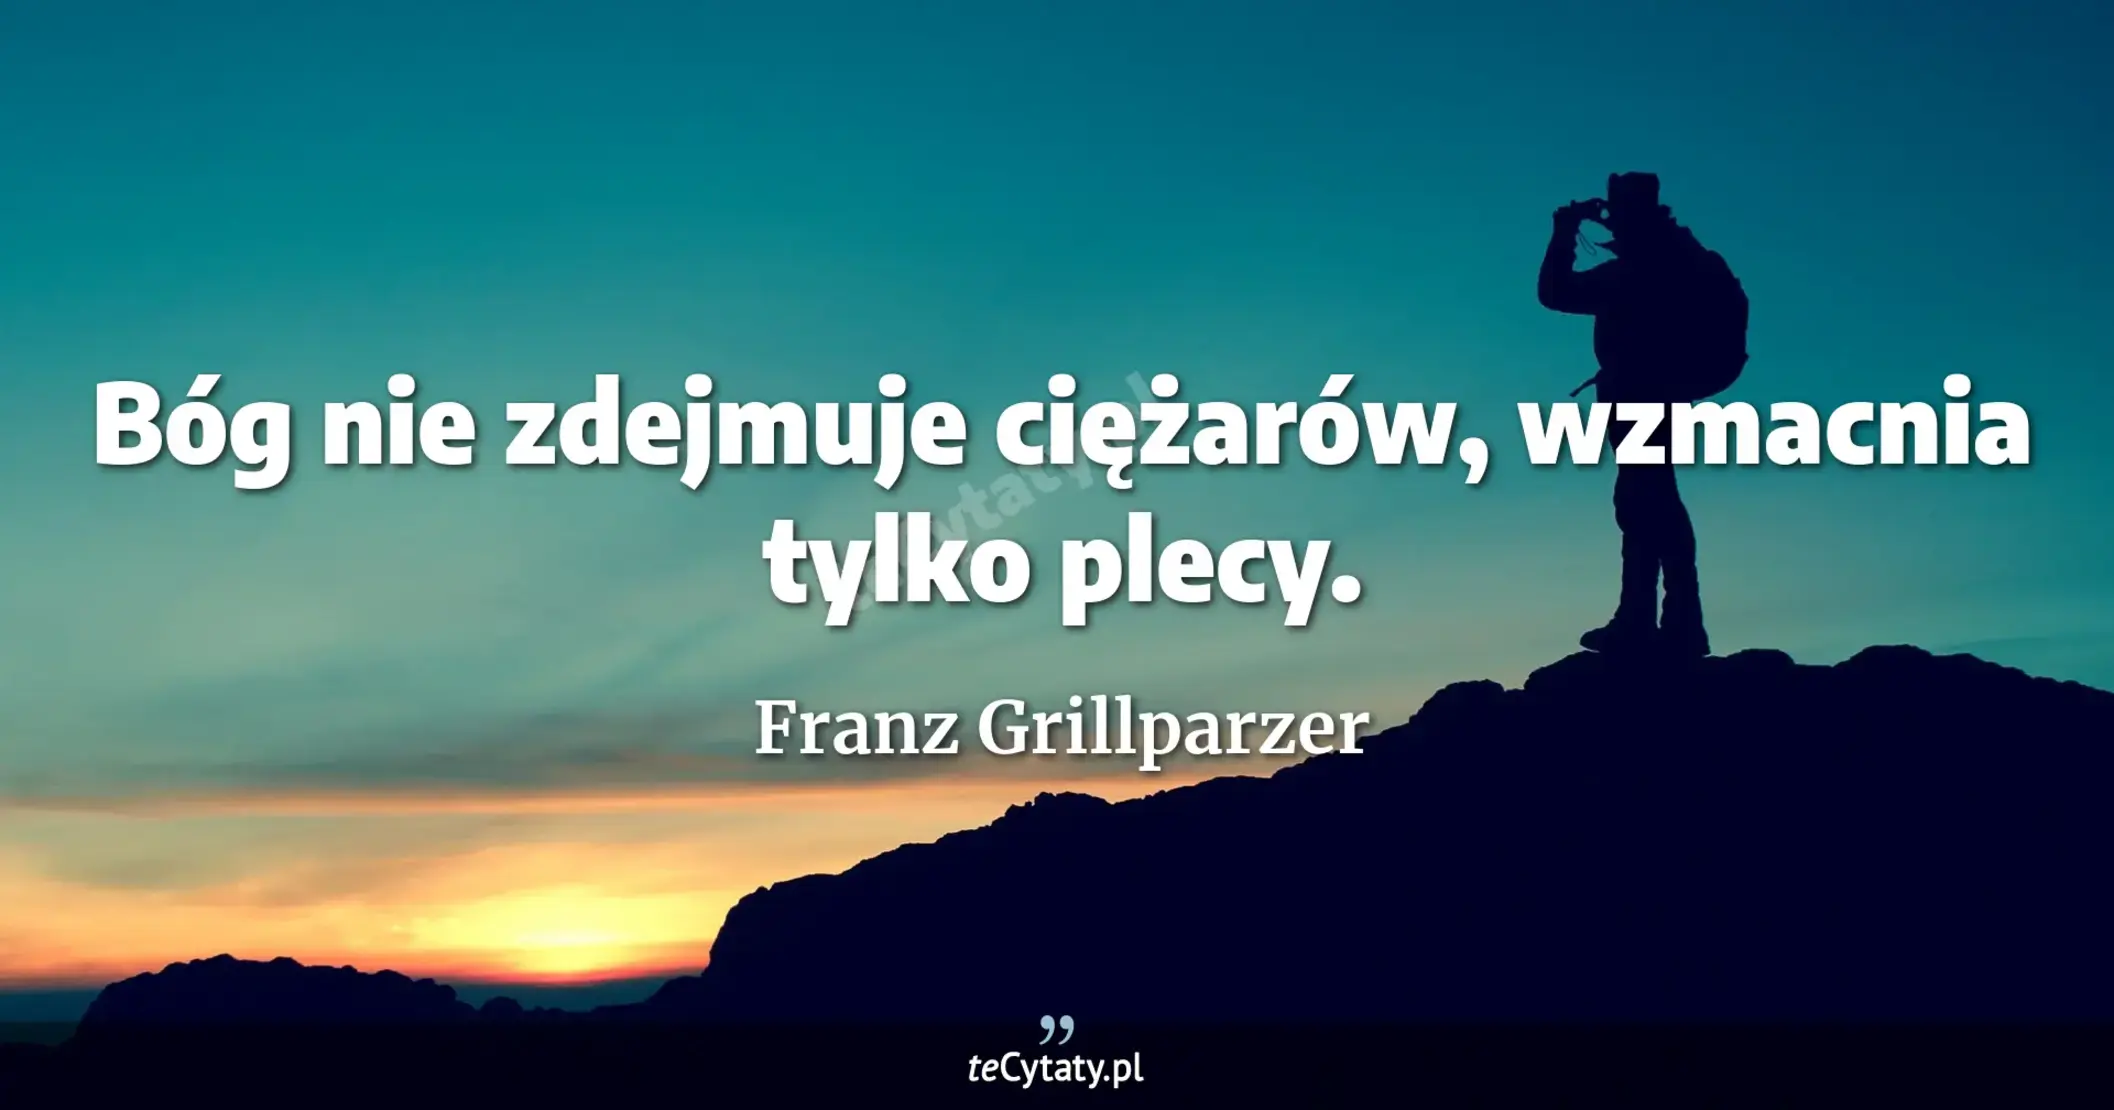 Bóg nie zdejmuje ciężarów, wzmacnia tylko plecy. - Franz Grillparzer